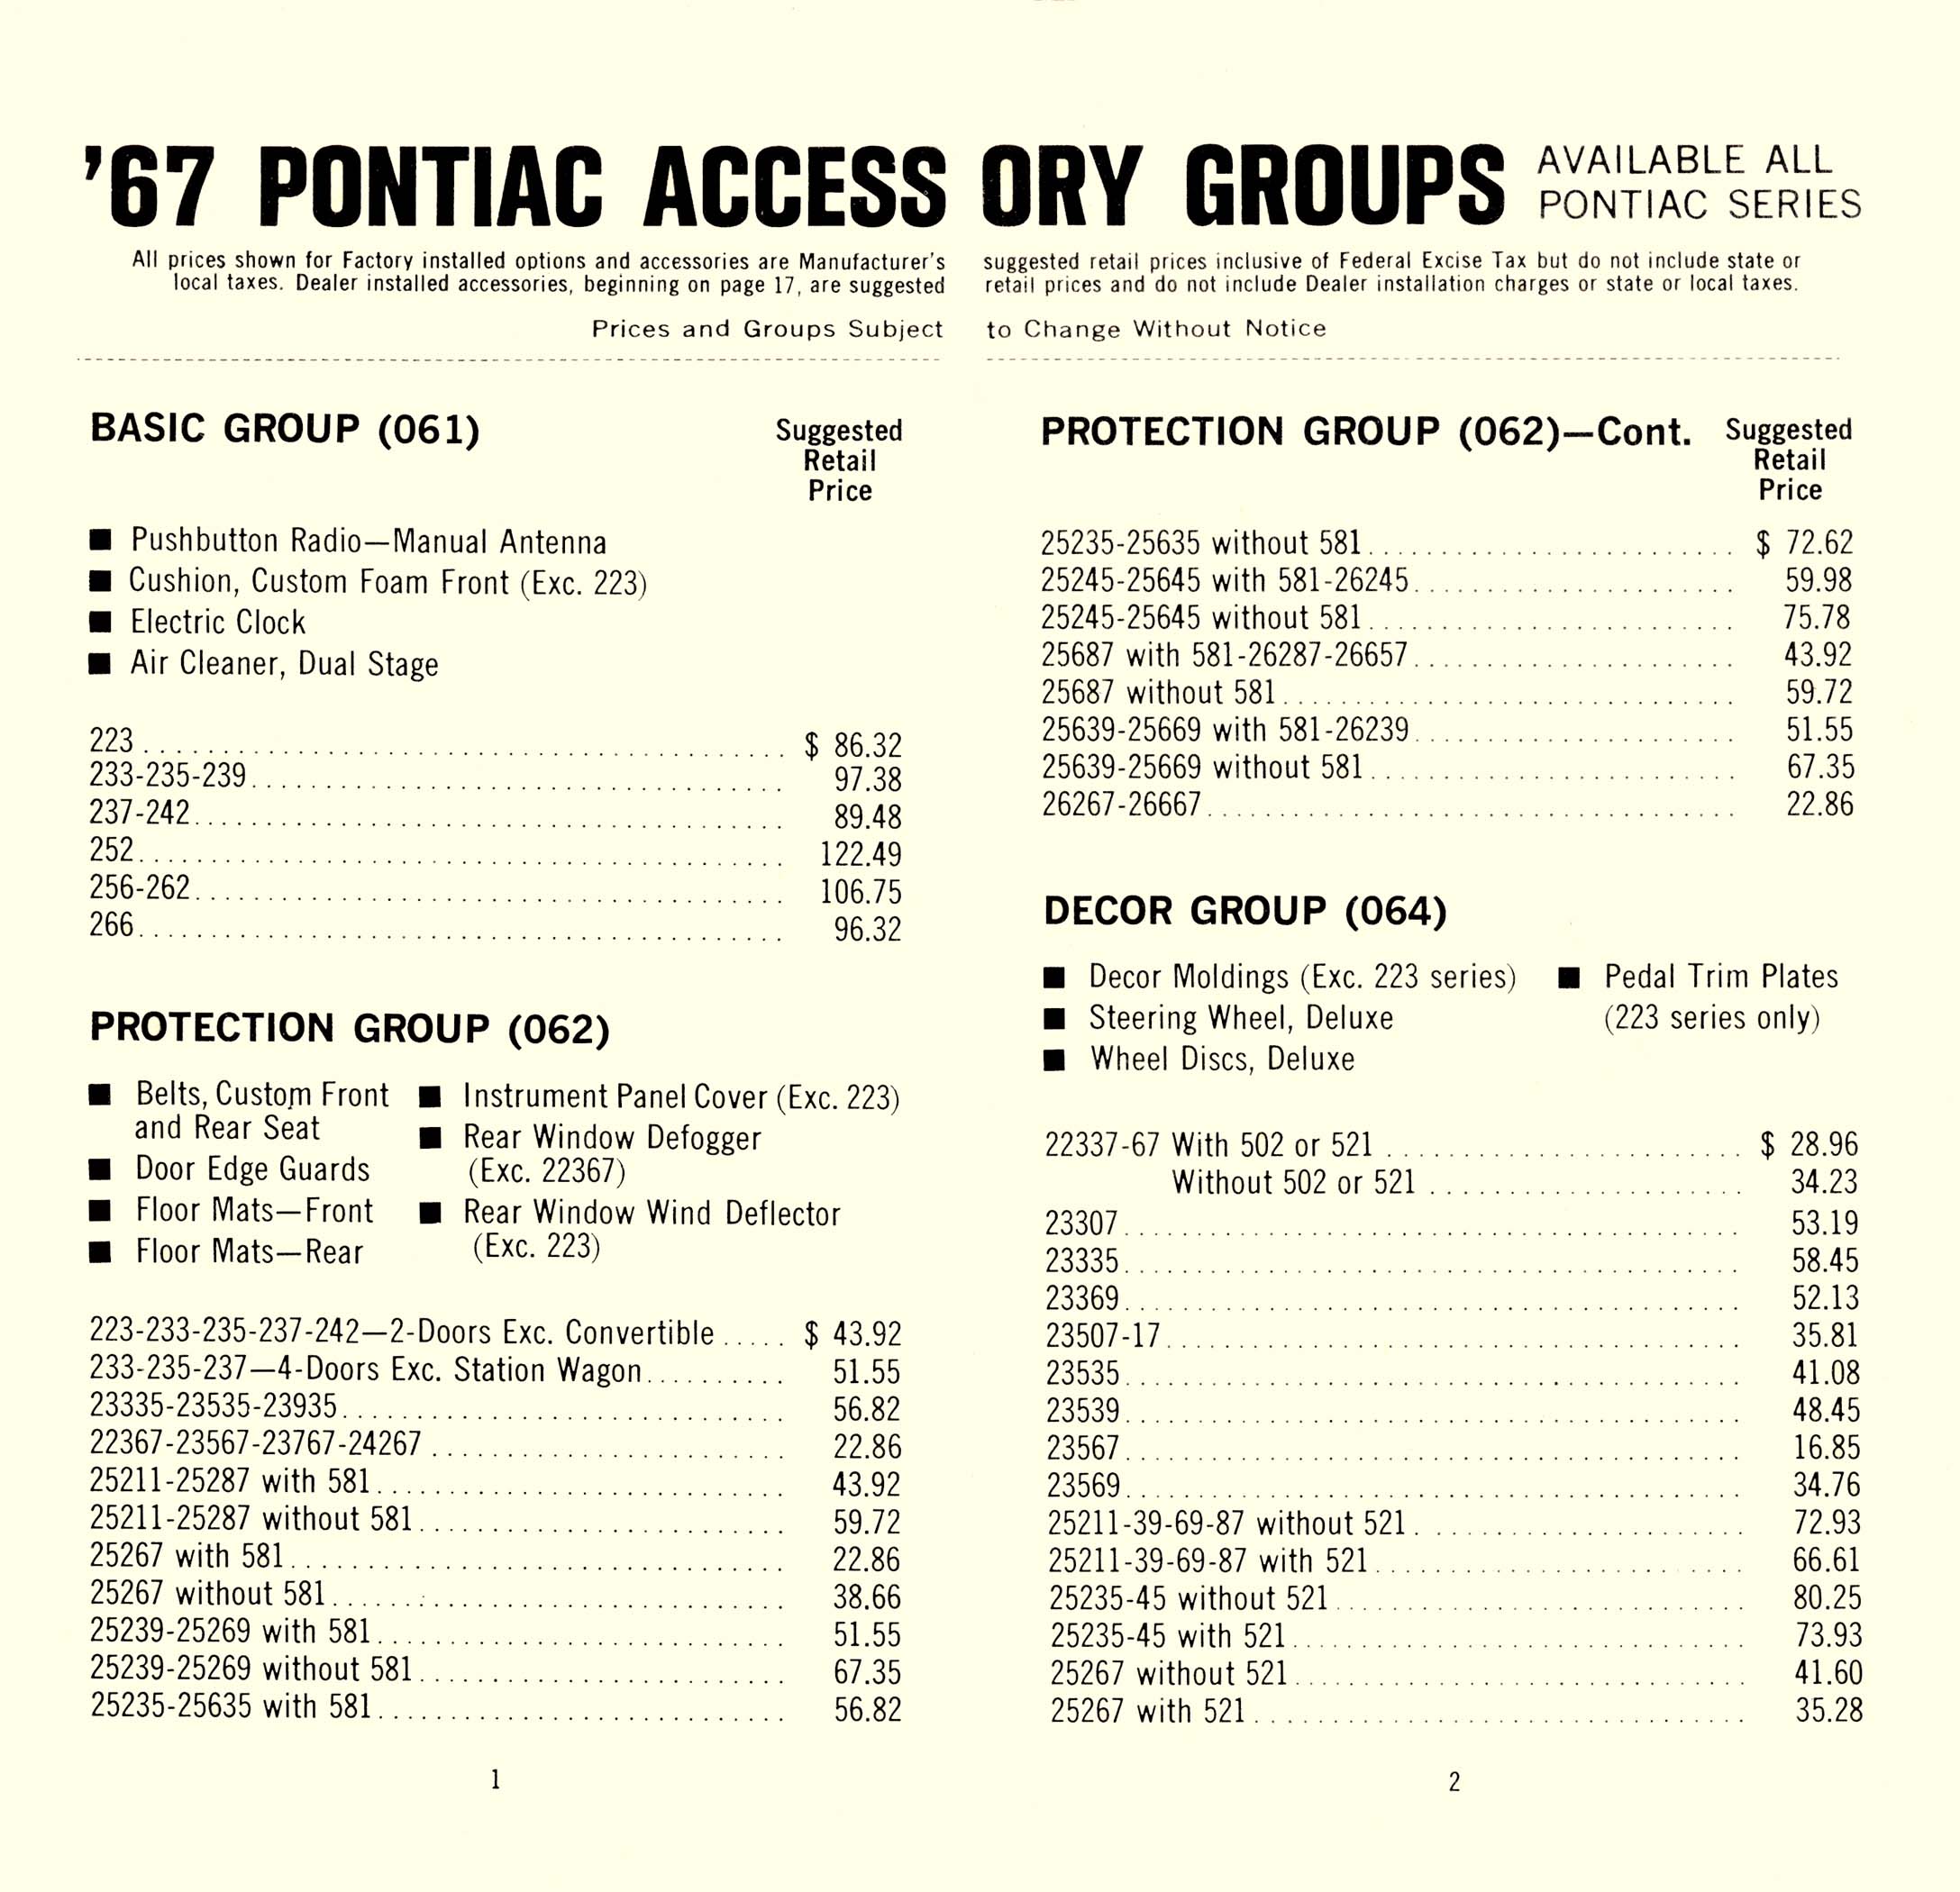 1967_Pontiac_Pocket__Accessorizer-01-02